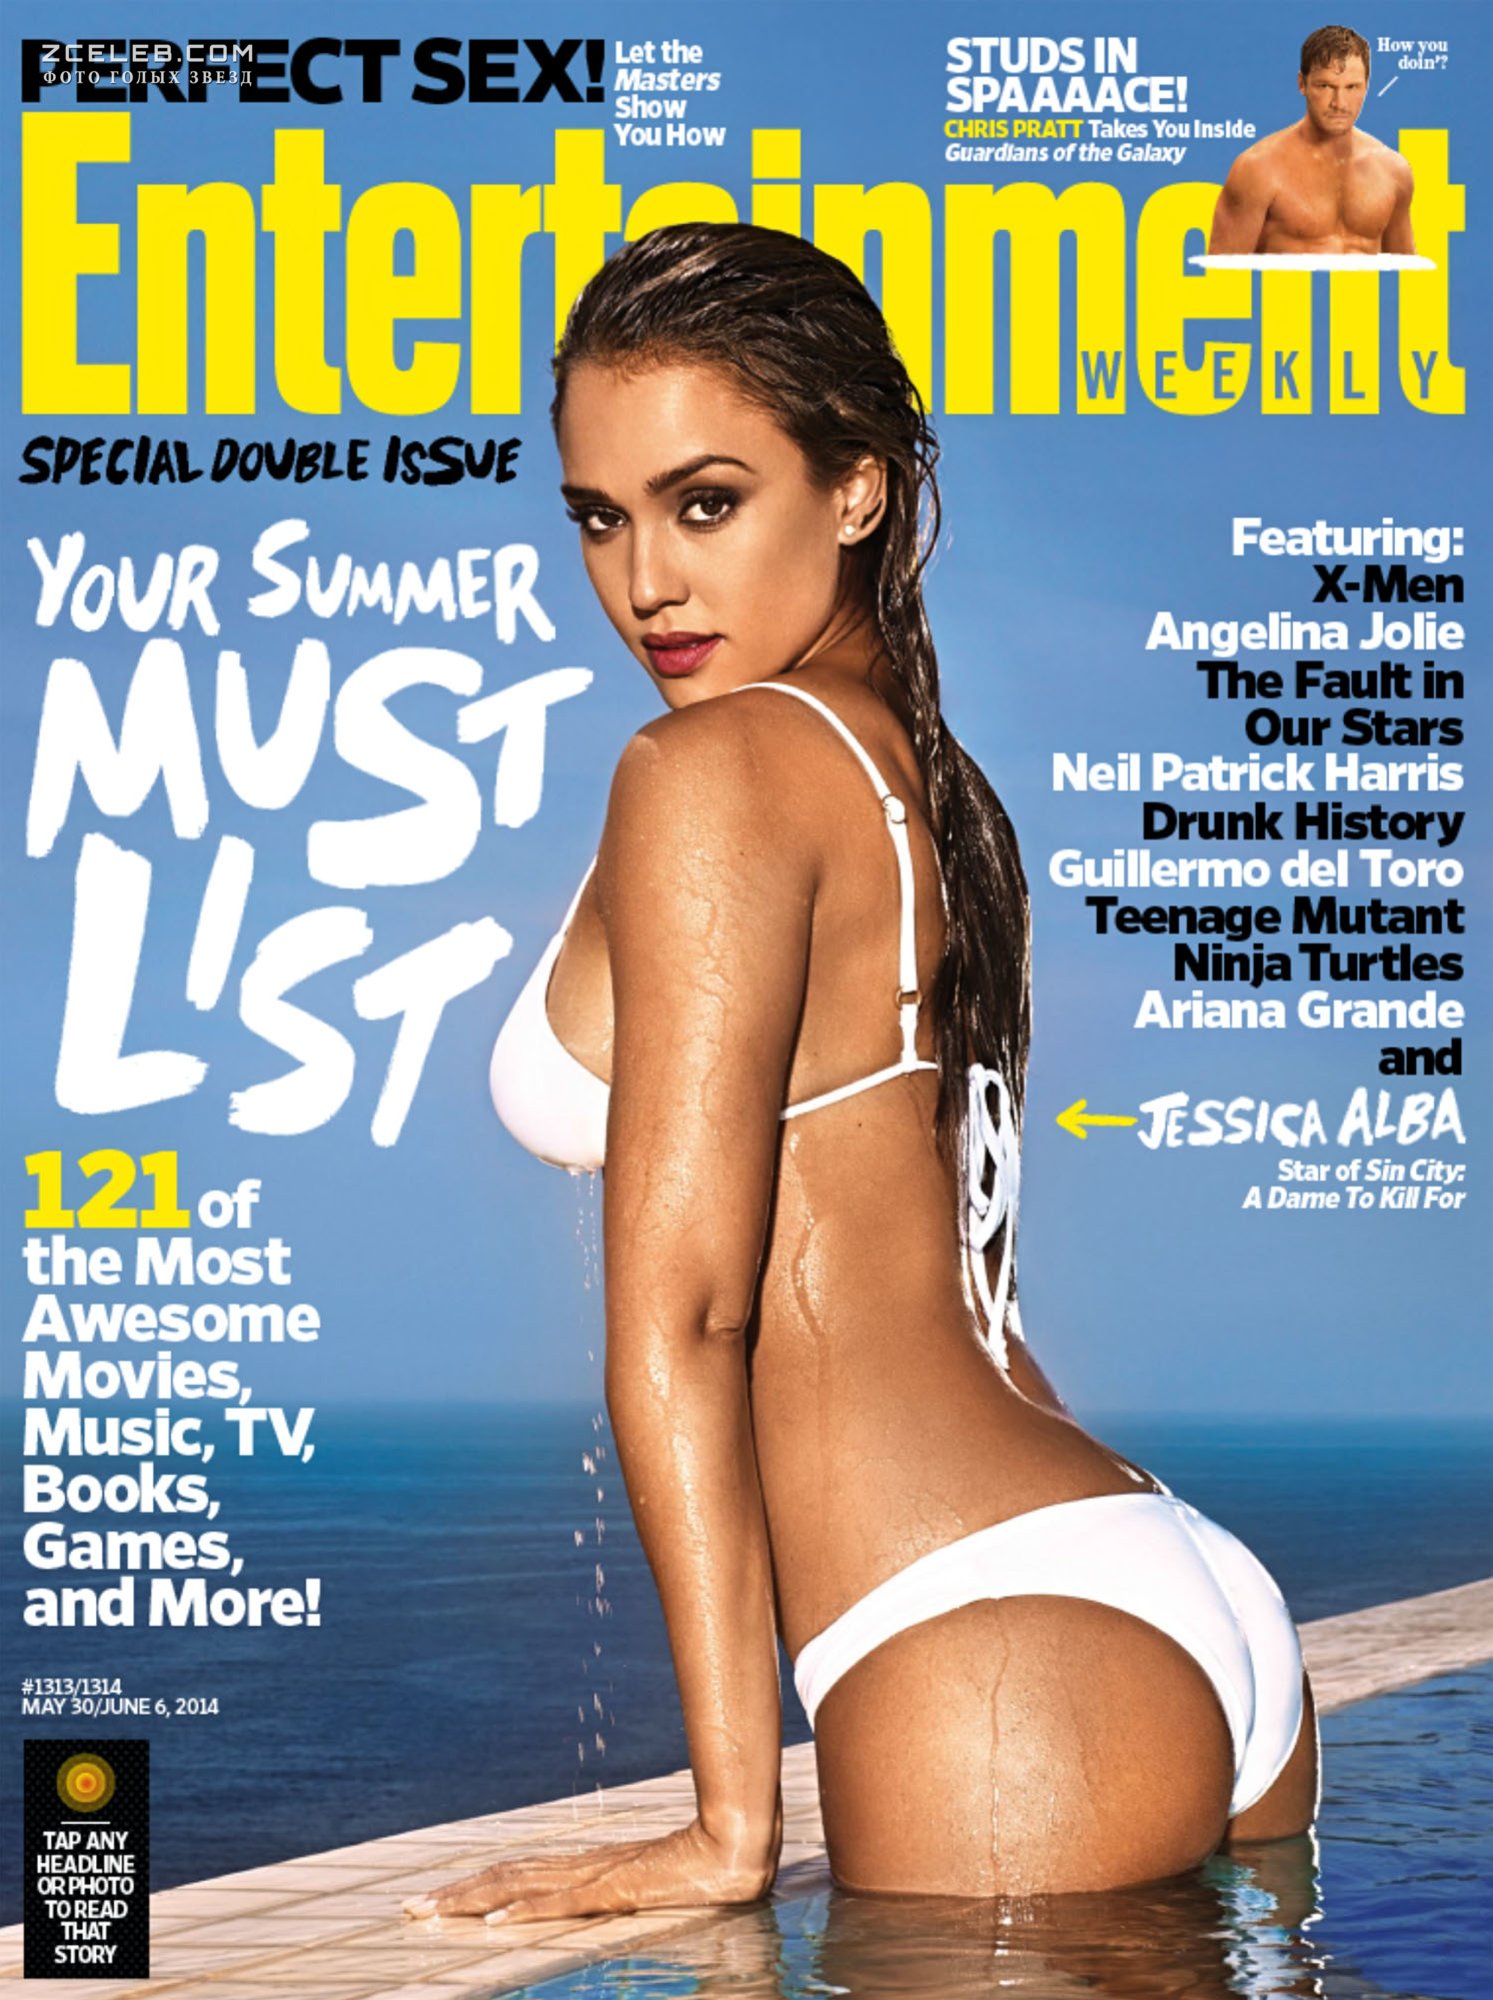 Джессика Альба позирует в купальнике для журнала Entertainment Weekly, Май  2014 / ZCELEB.COM